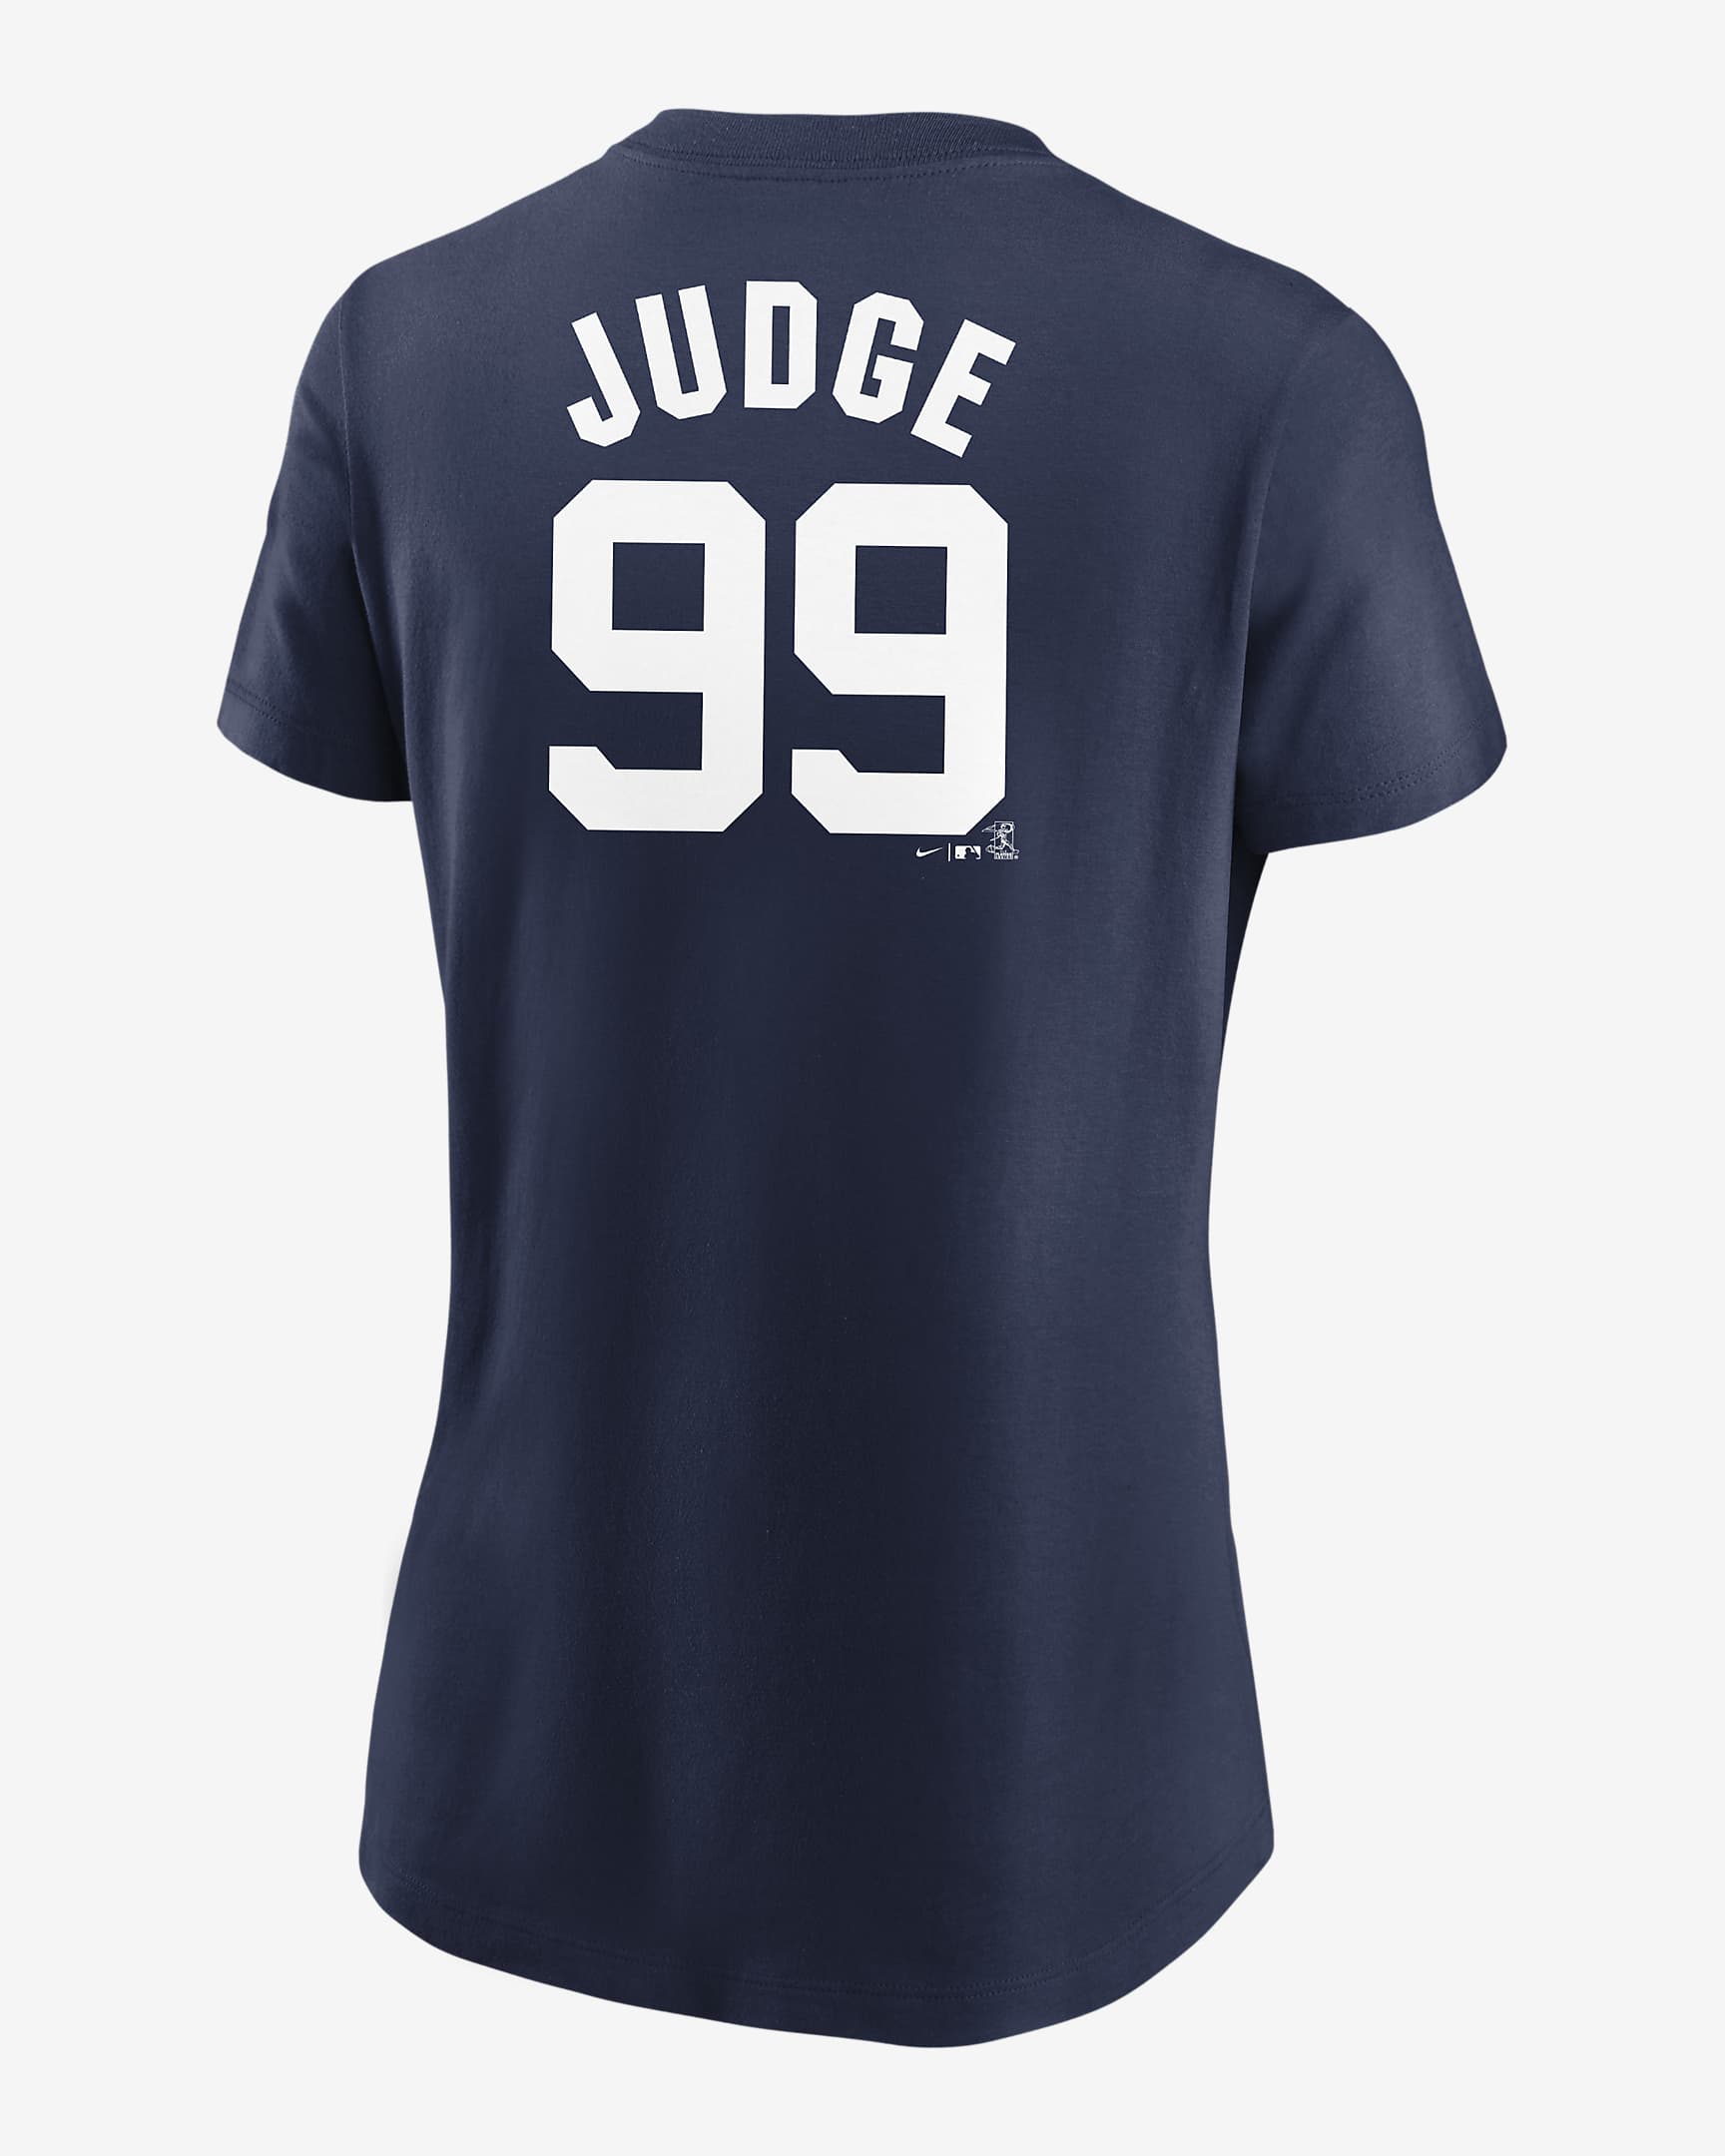 MLB New York Yankees (Aaron Judge) Women's T-Shirt. Nike.com